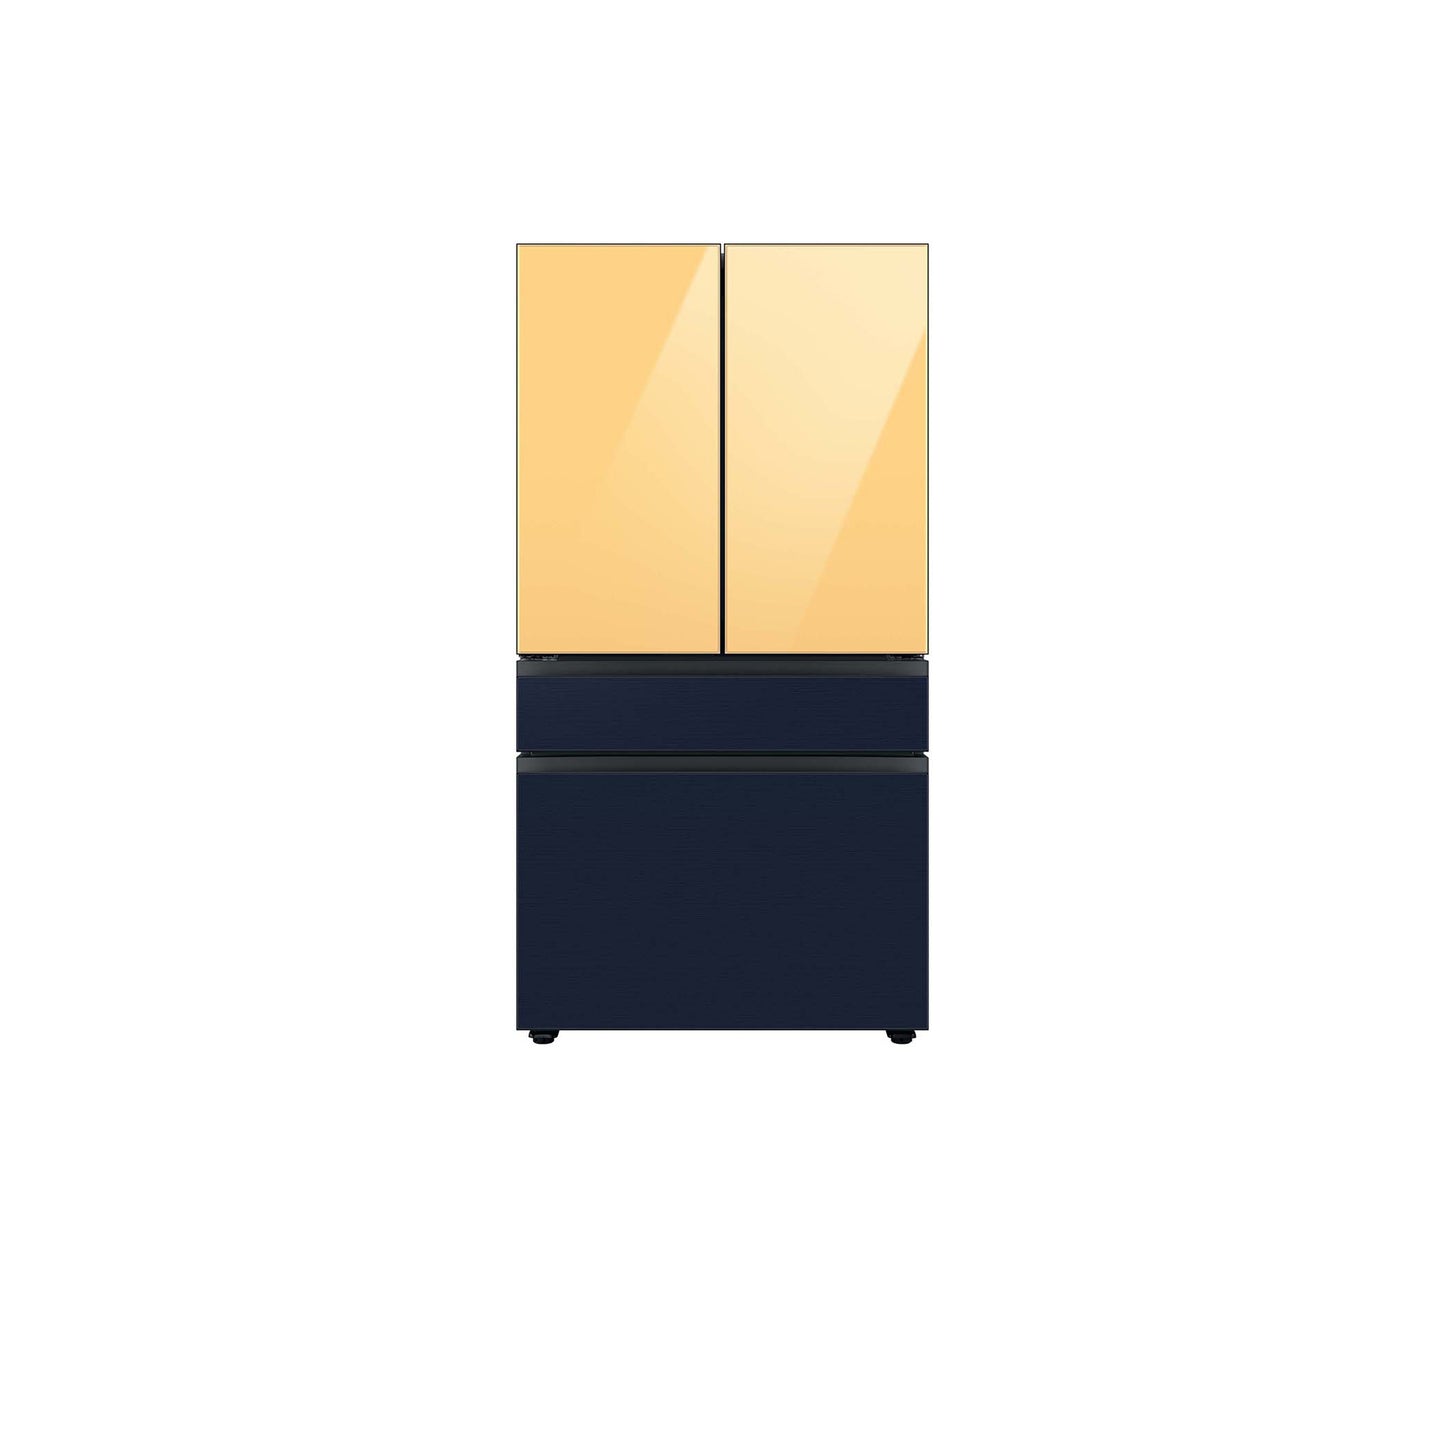 ثلاجة بباب فرنسي بأربعة أبواب مخصصة (29 قدمًا مكعبًا) مع ألواح علوية من الزجاج باللون الأزرق الصباحي وألواح وسطى وسفلية من الزجاج الأبيض. 